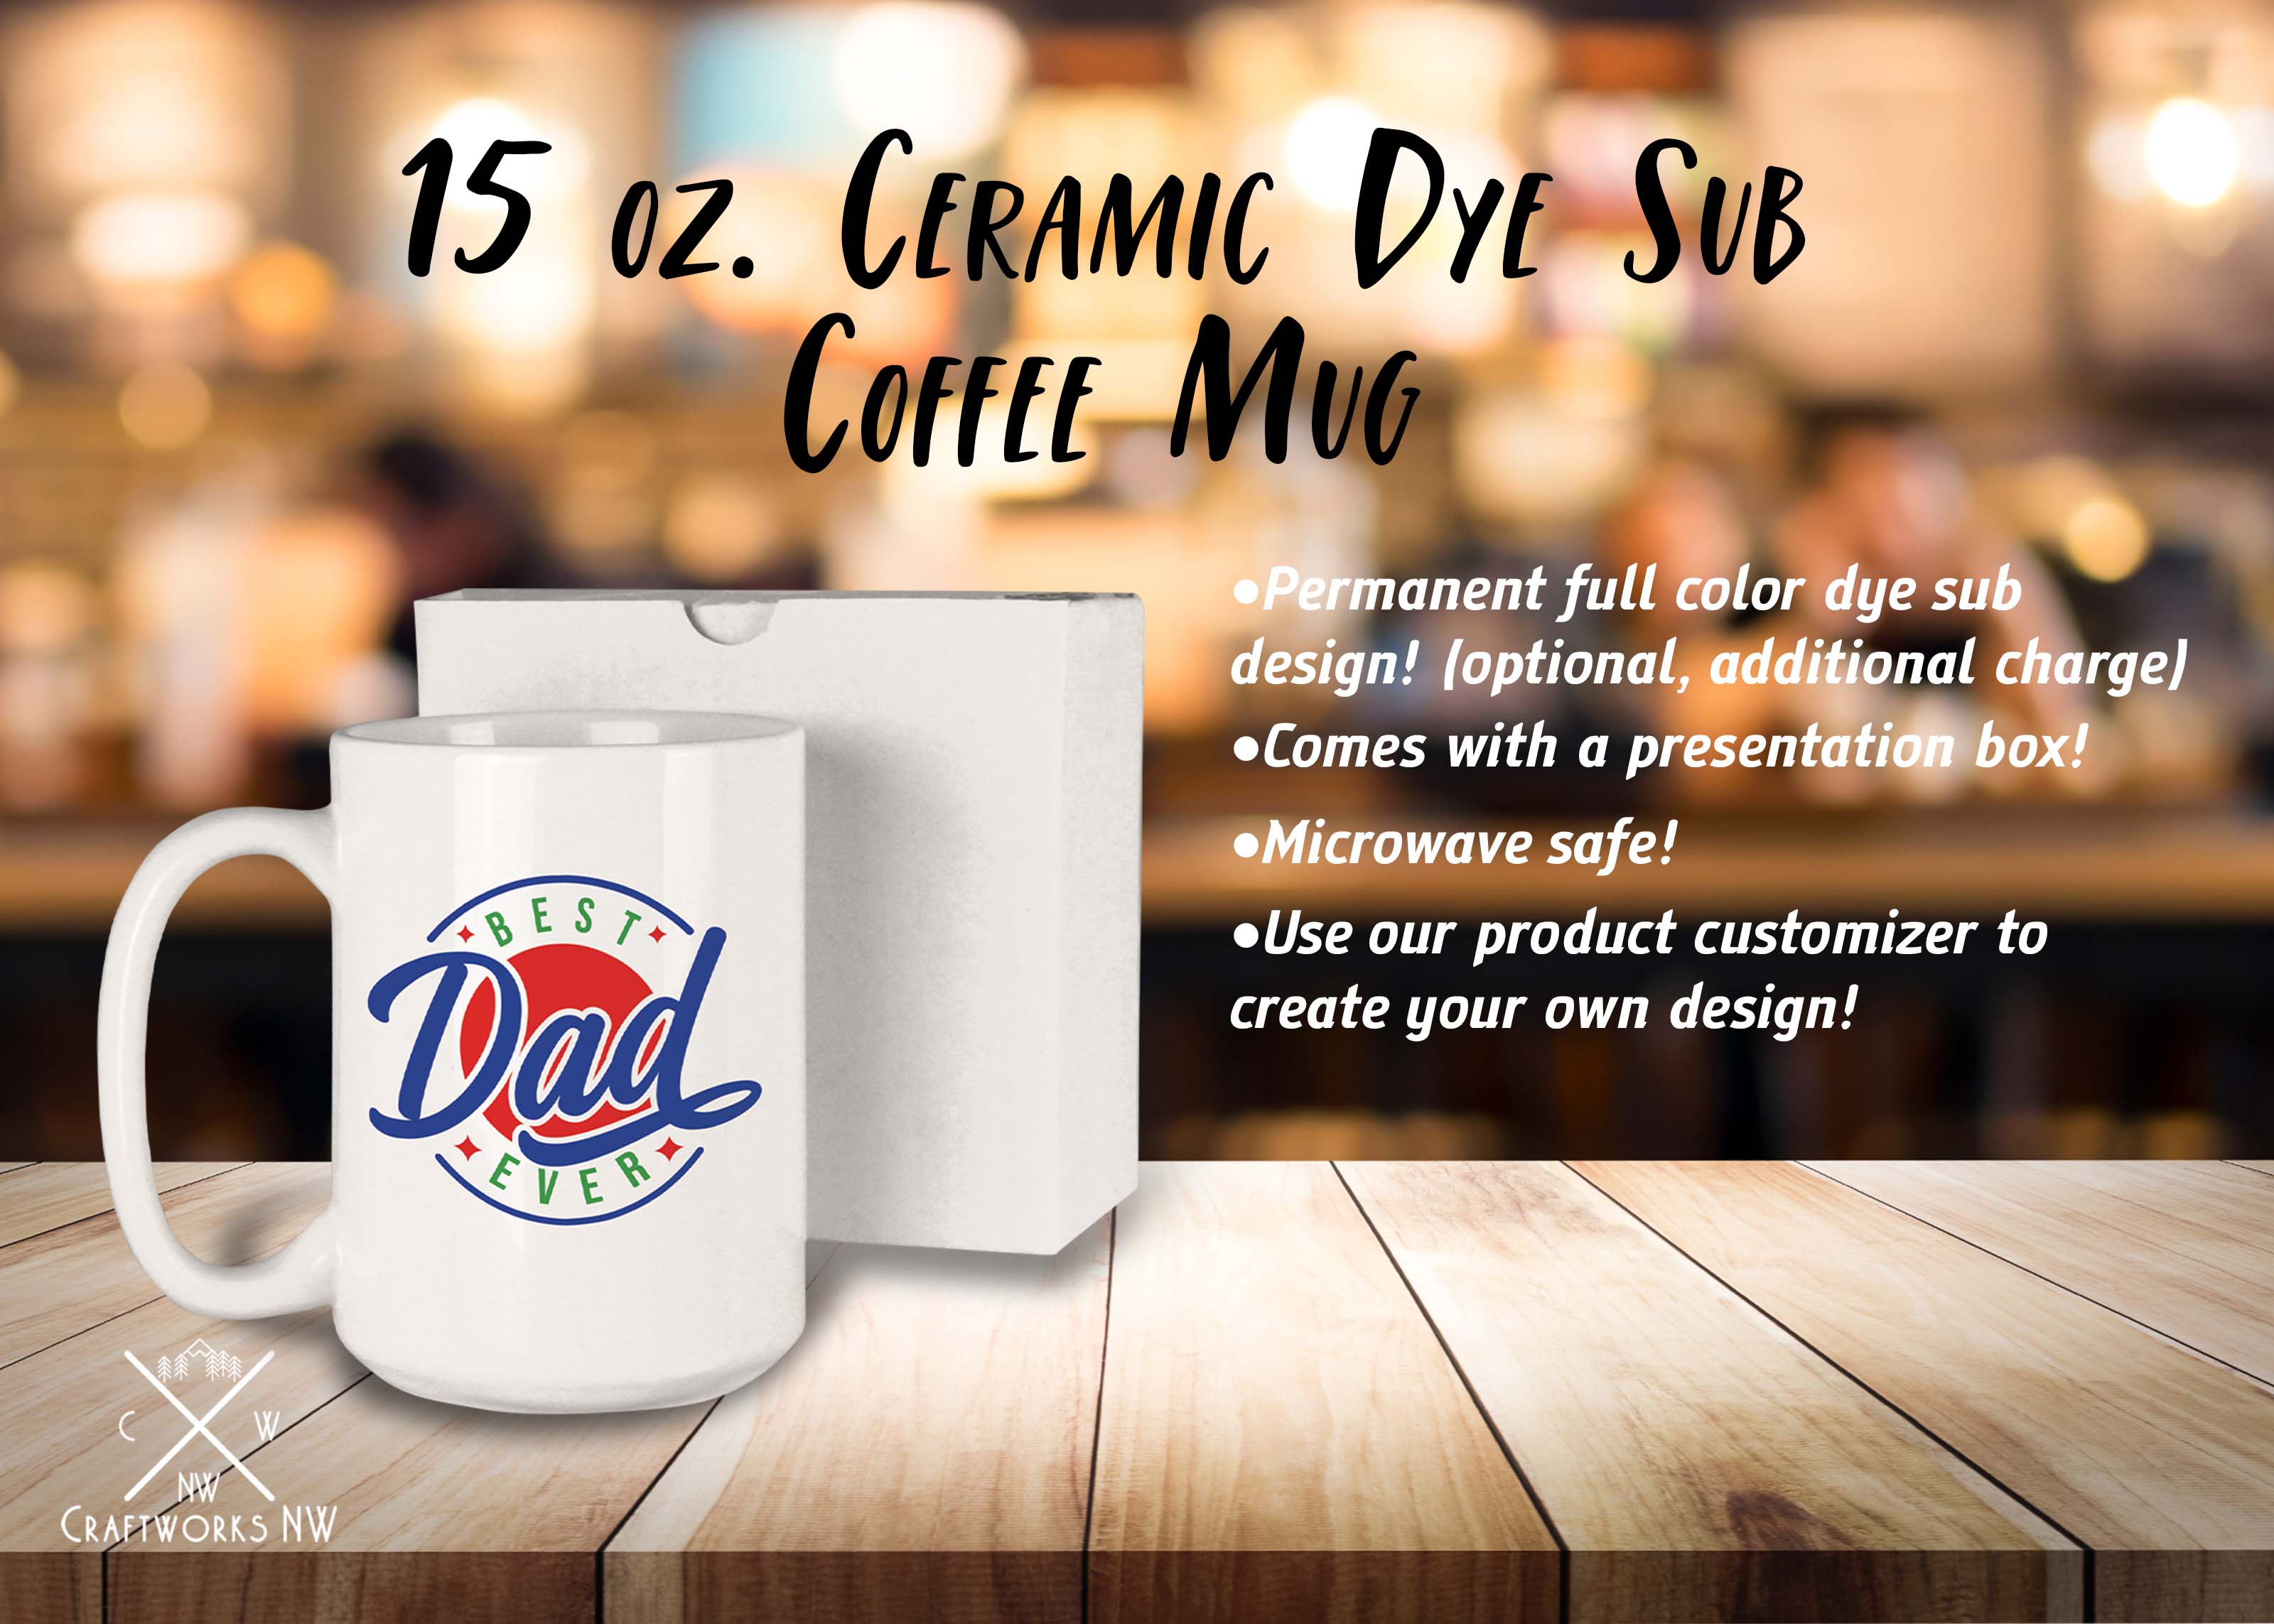 Ceramic Mug with White Box 15 oz. White Sublimatable, Full Color Sub Dye Ceramic Mug Craftworks NW 